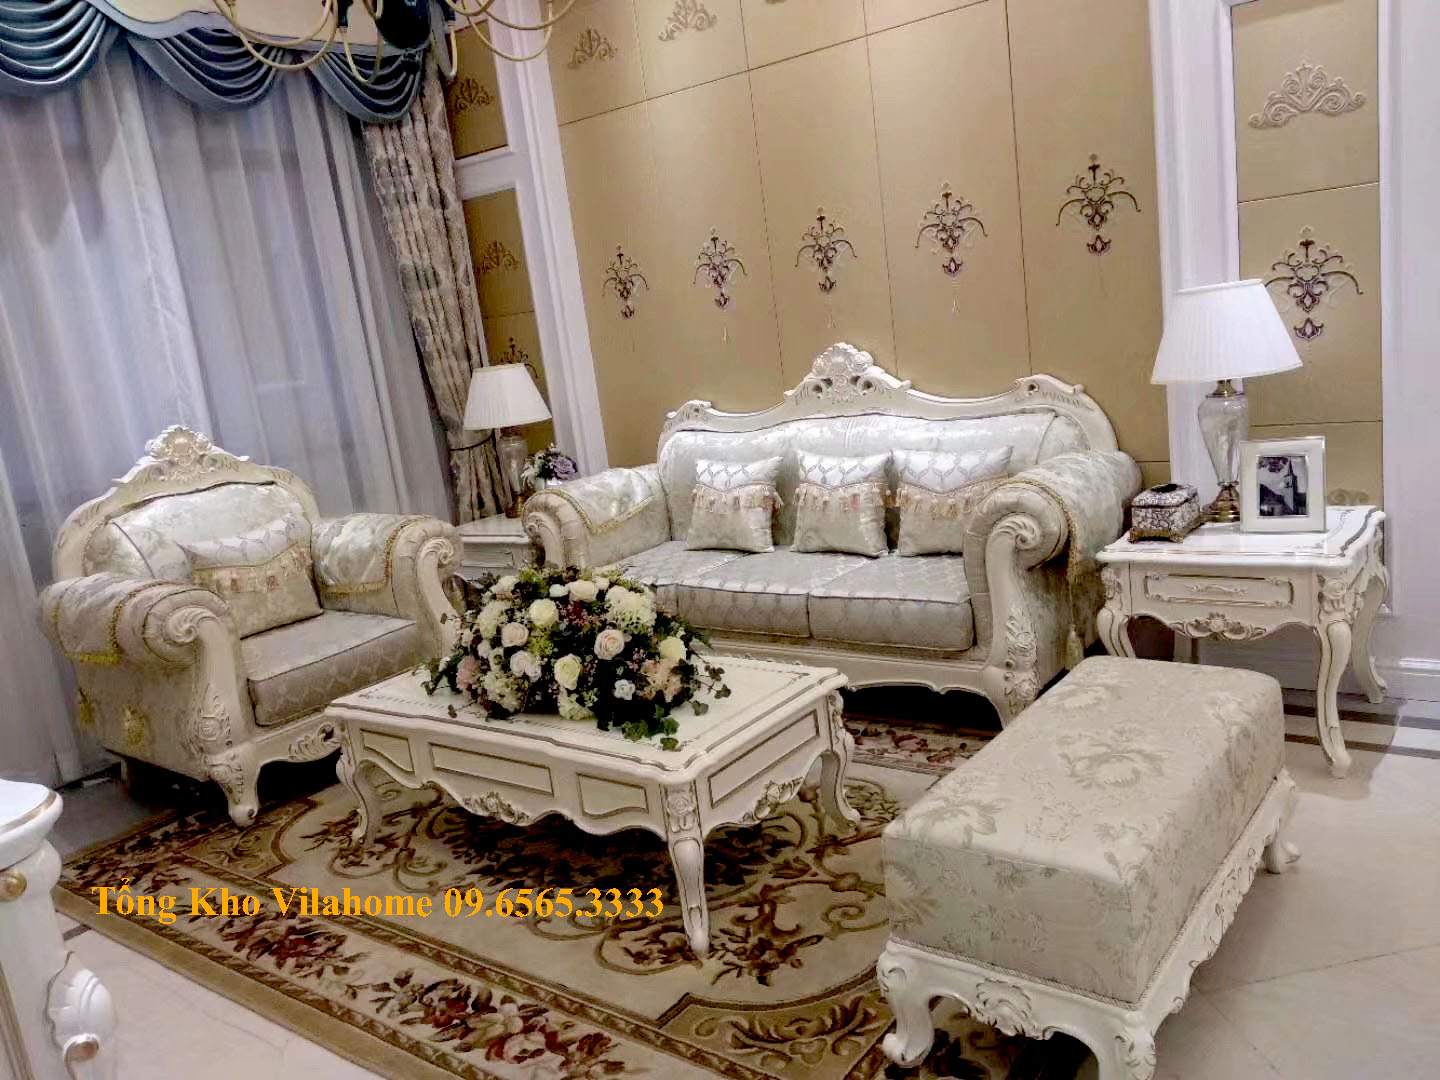 Bộ sofa tân cổ điển 1 văng, 1 ghế đơn, 1 đôn dài kết hợp bàn trà màu trắng sang chảnh.